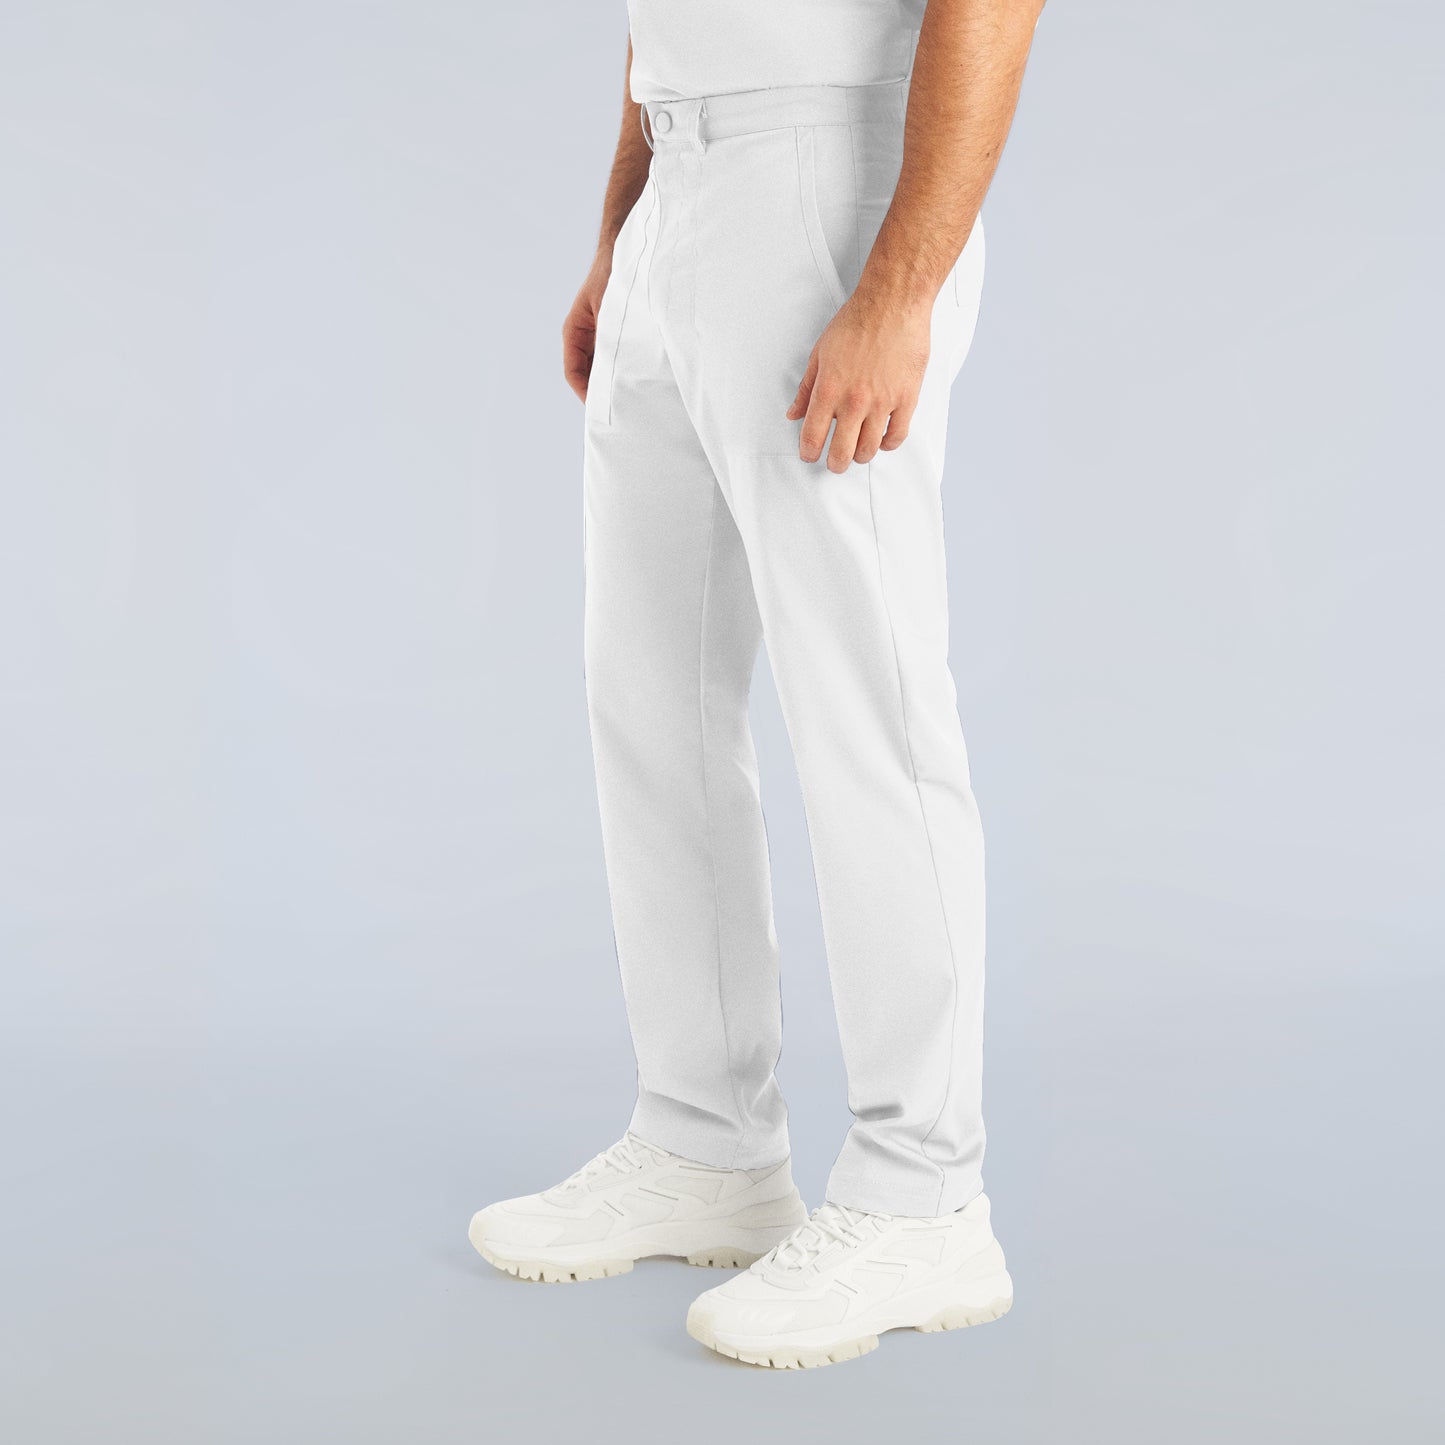 Men's straight pants - PROFLEX - L408T long